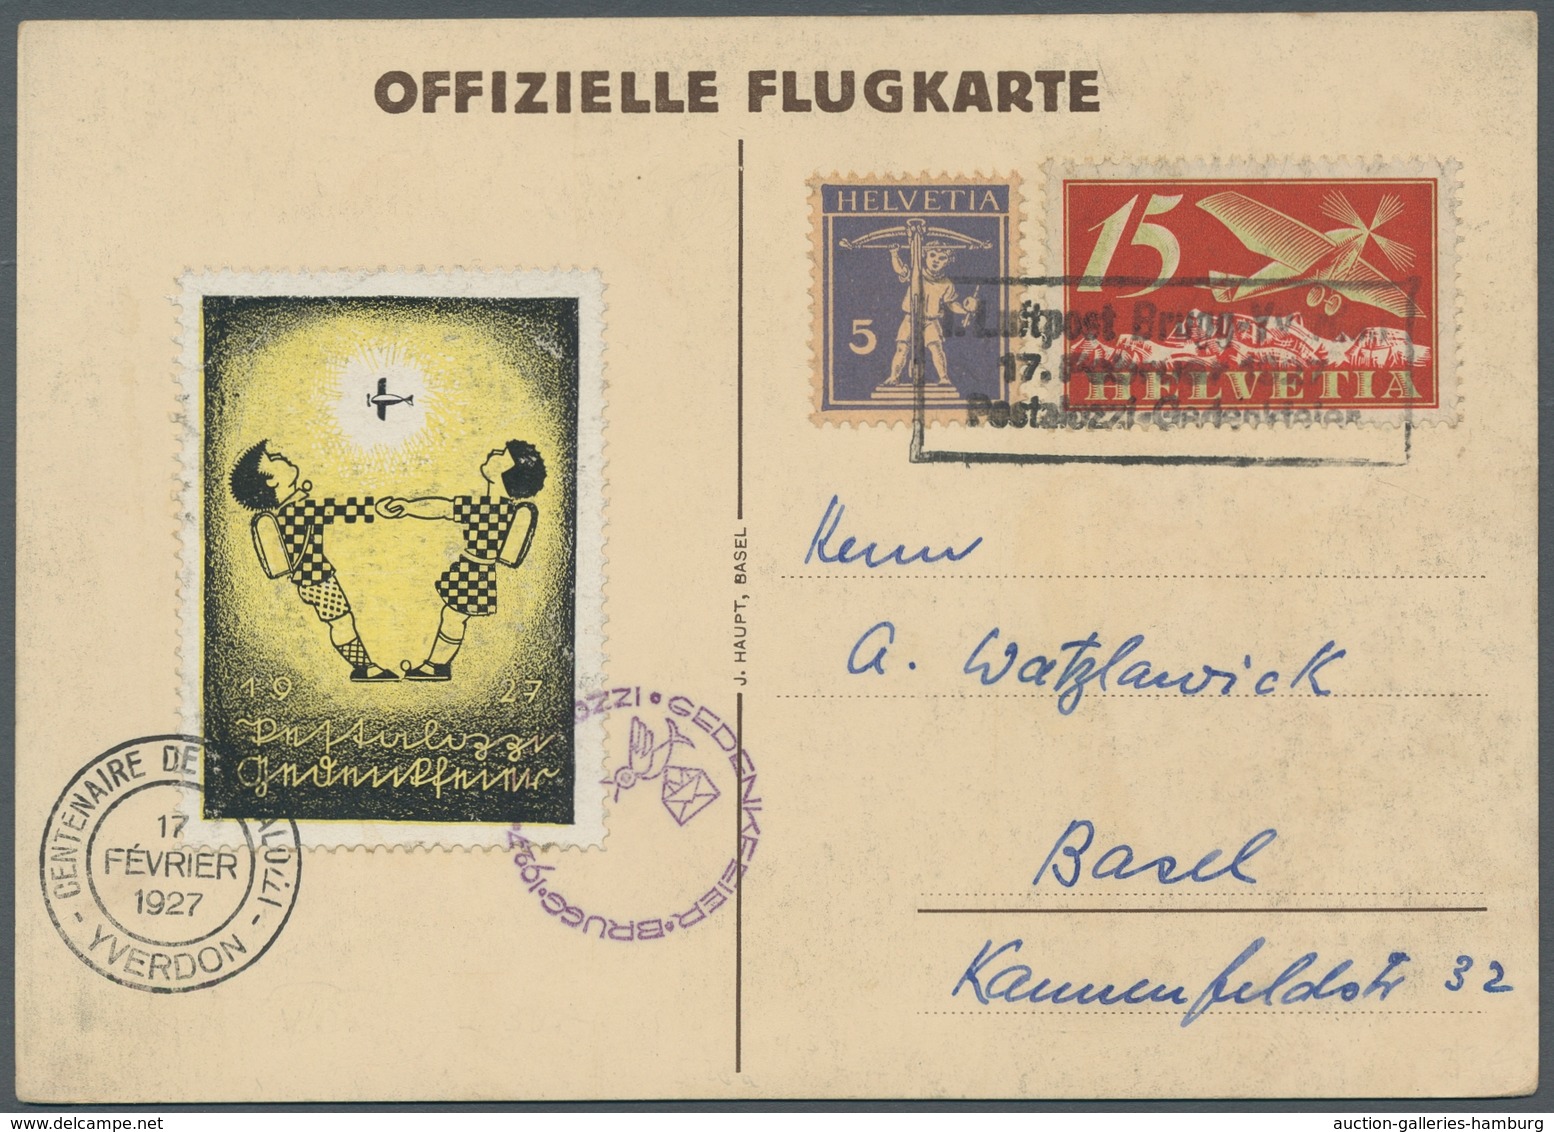 Schweiz: 1927, Pestalozzi-Gedenkflug Brugg-Yverdon, Offizielle Flugkarte Mit Farbiger Vignette Und F - Oblitérés